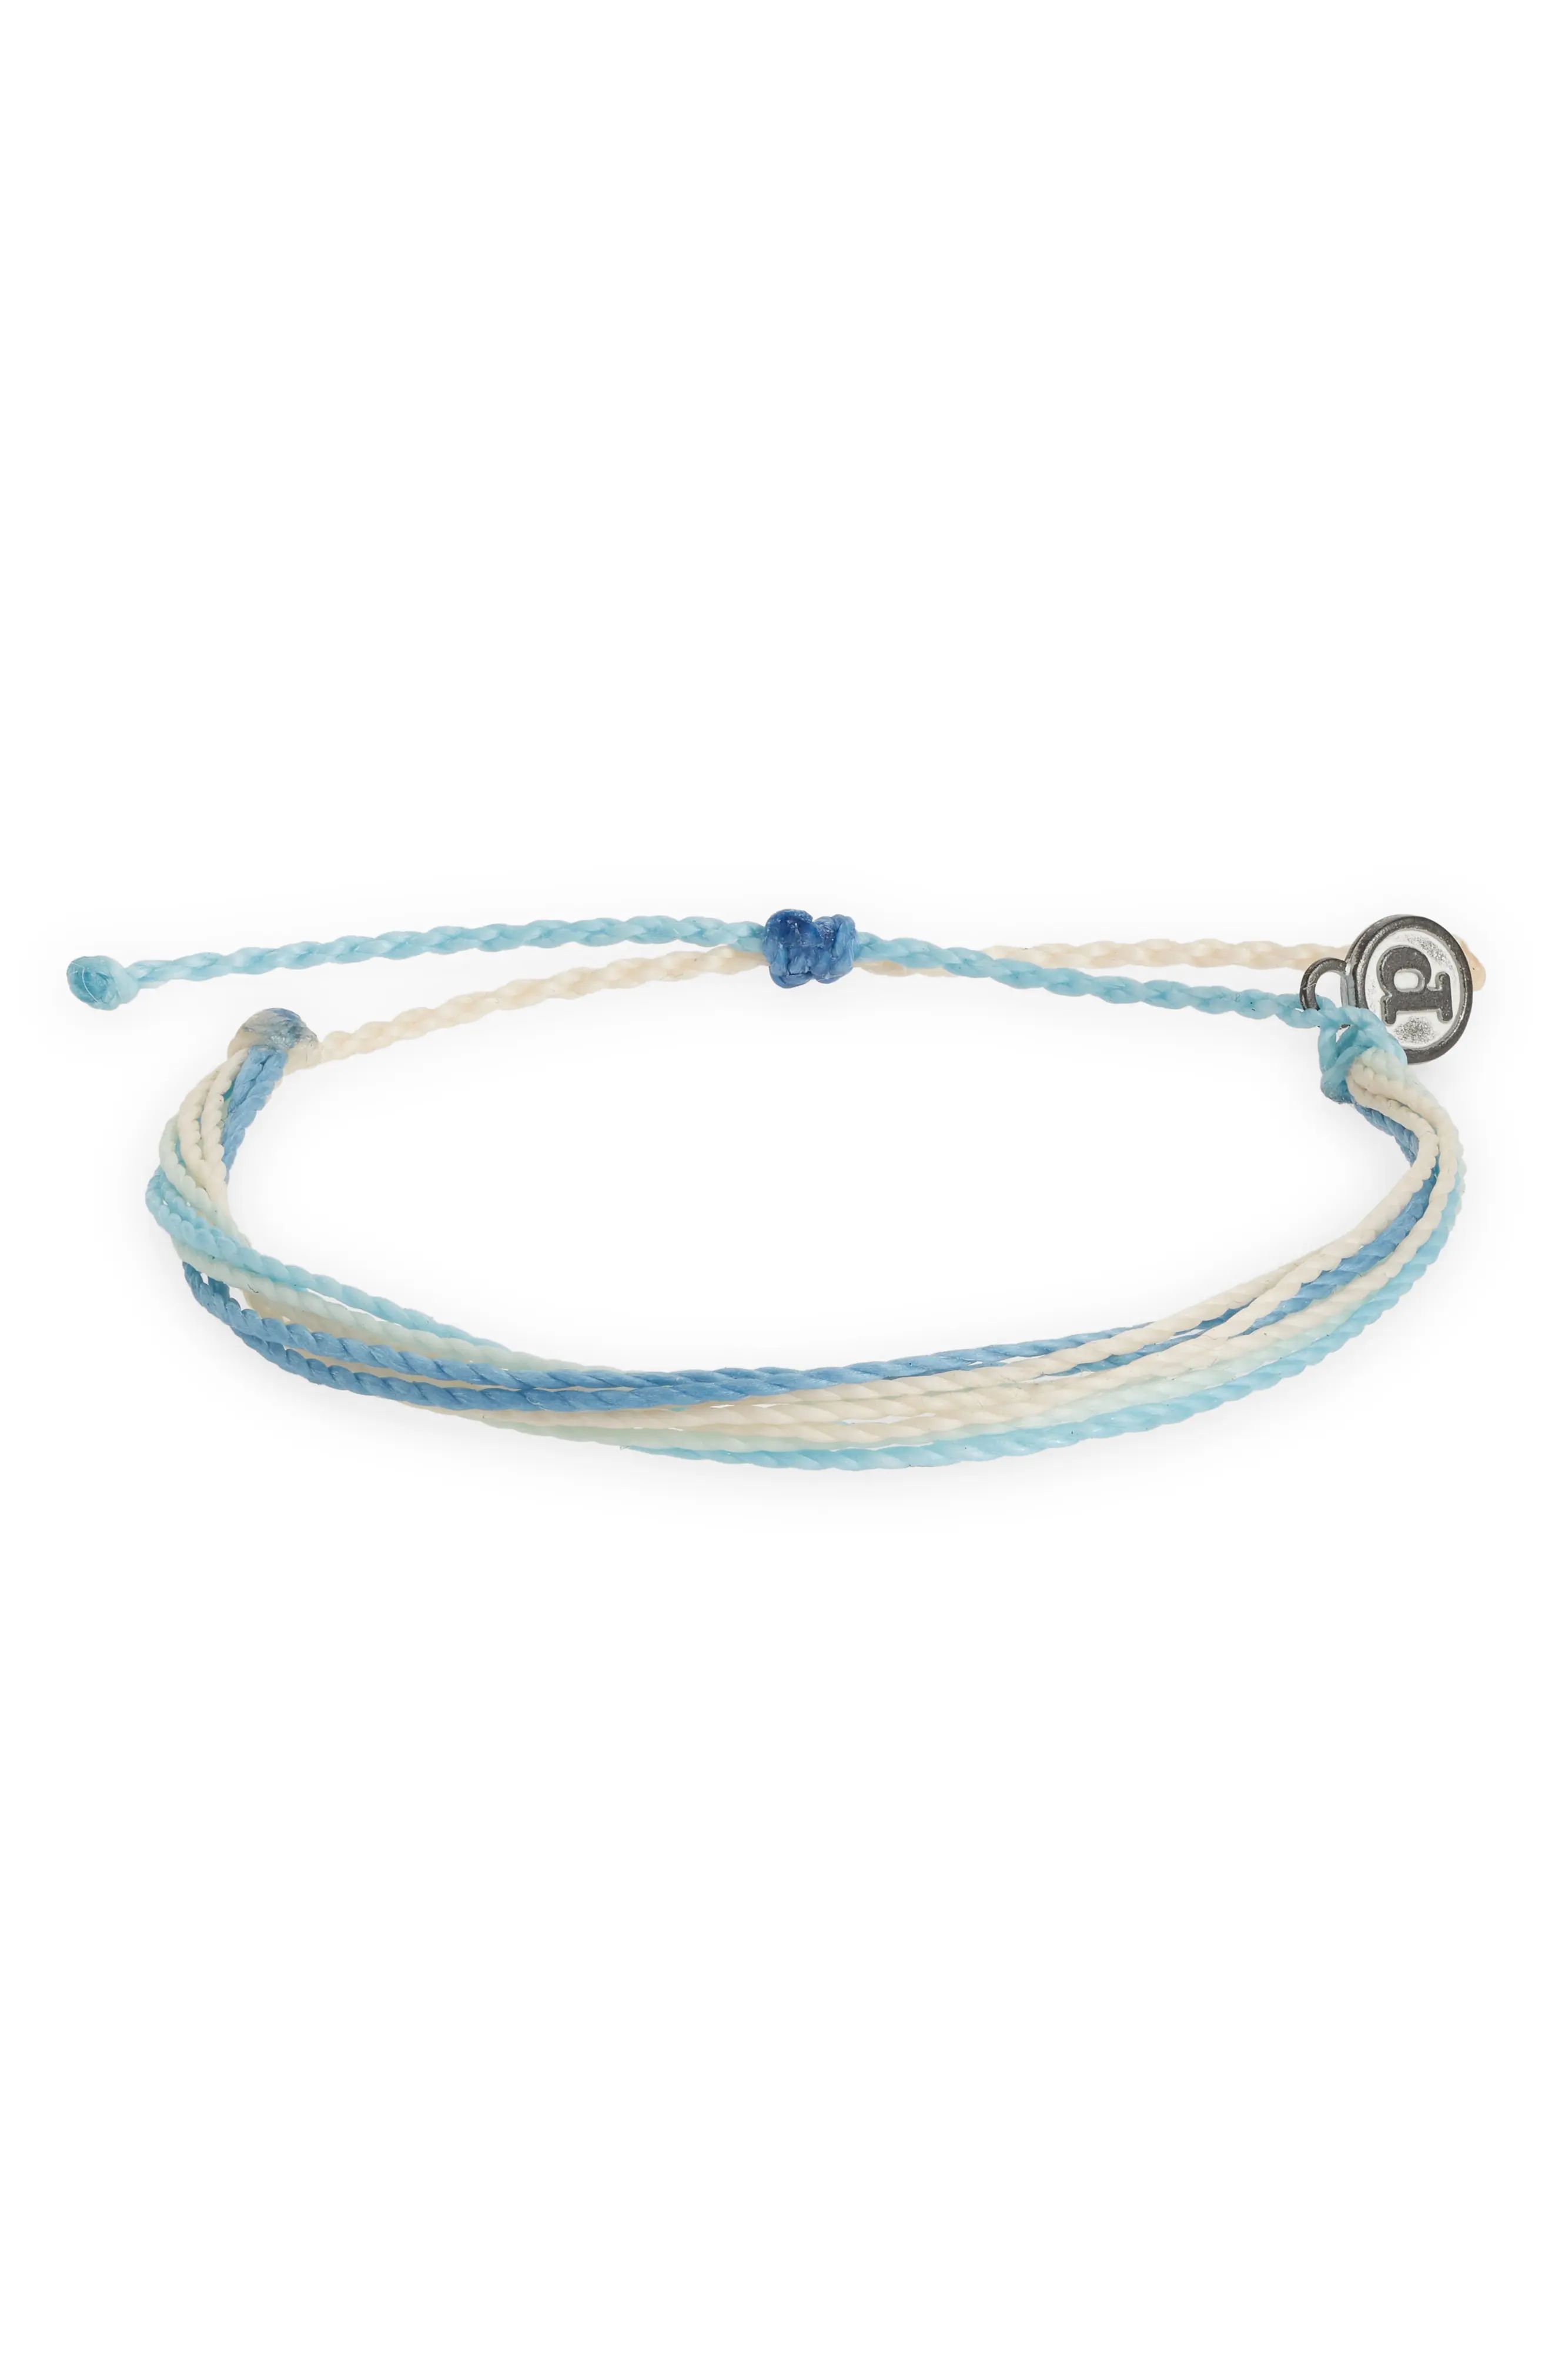 Pura Vida Original Multi Row String Bracelet in Spring Skies at Nordstrom | Nordstrom